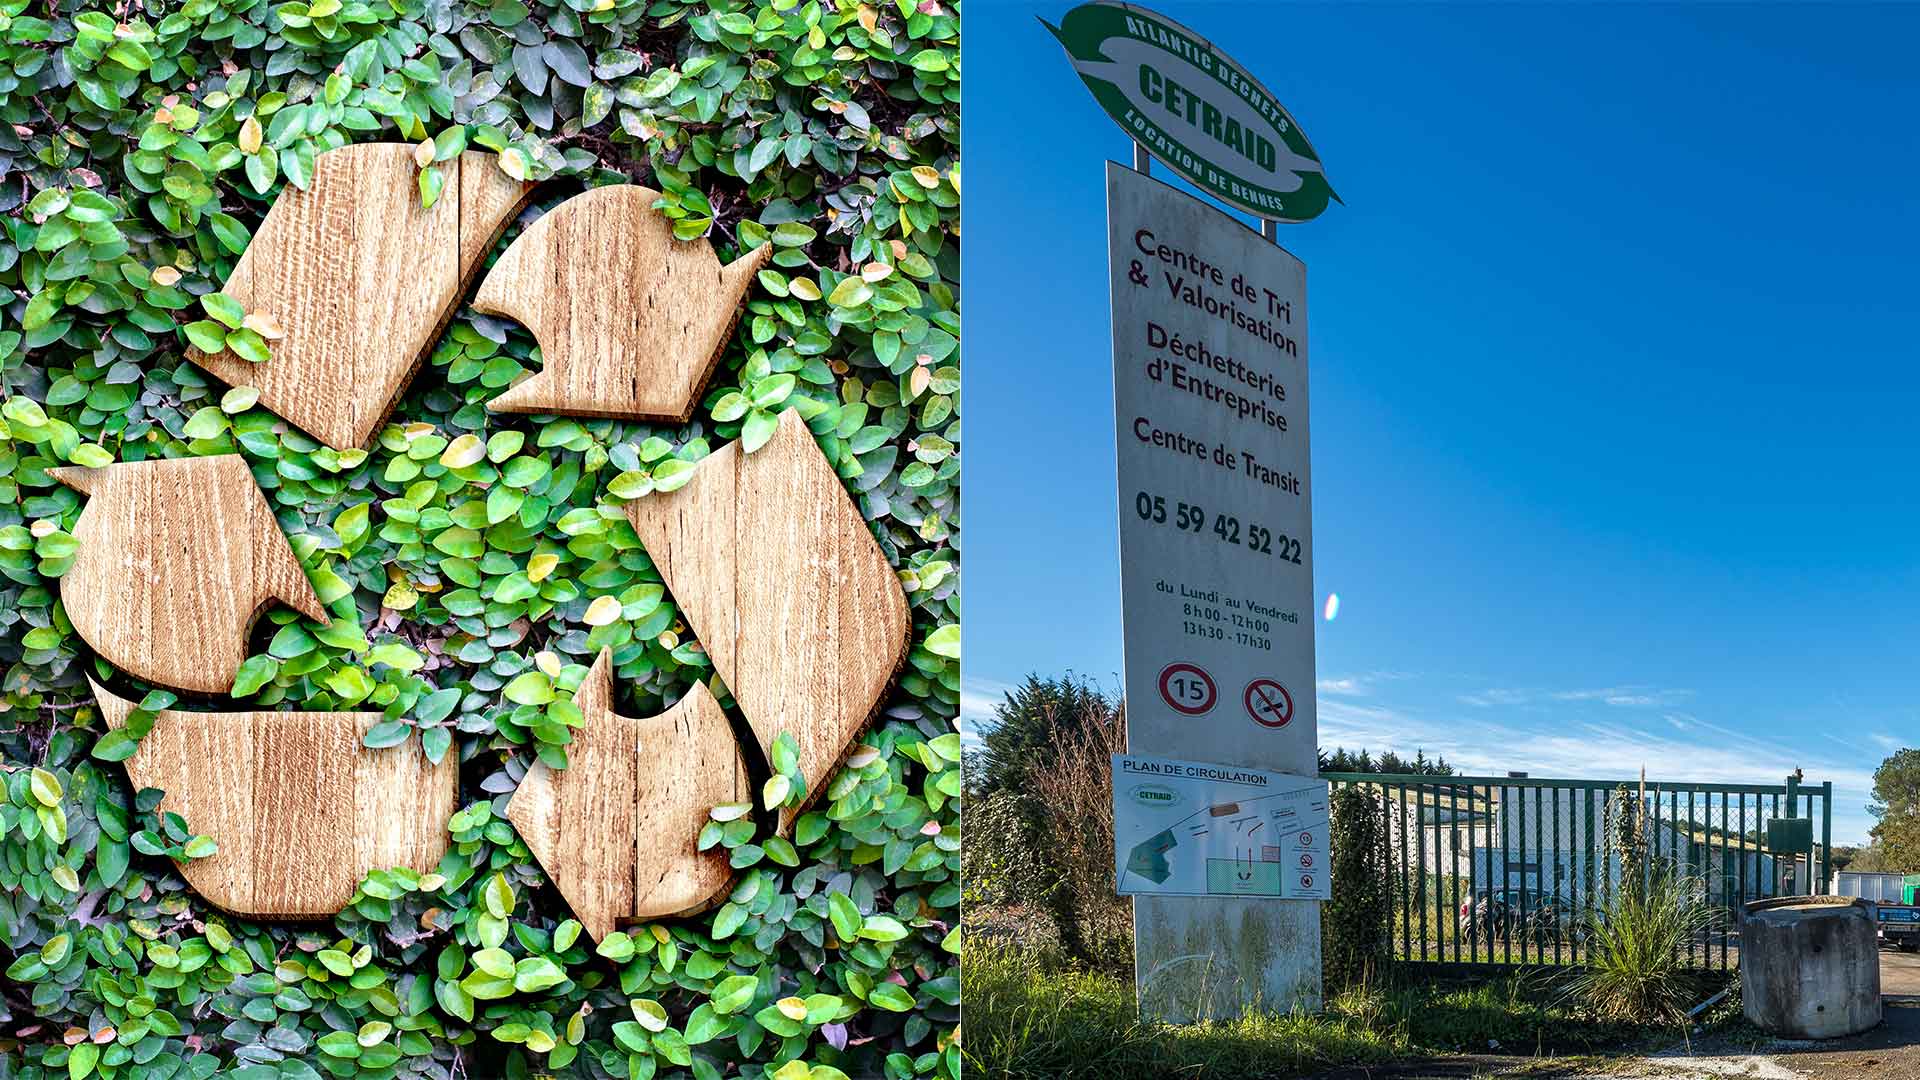 A gauche, pictogramme de recyclage en bois, à droite, devanture de l'entreprise